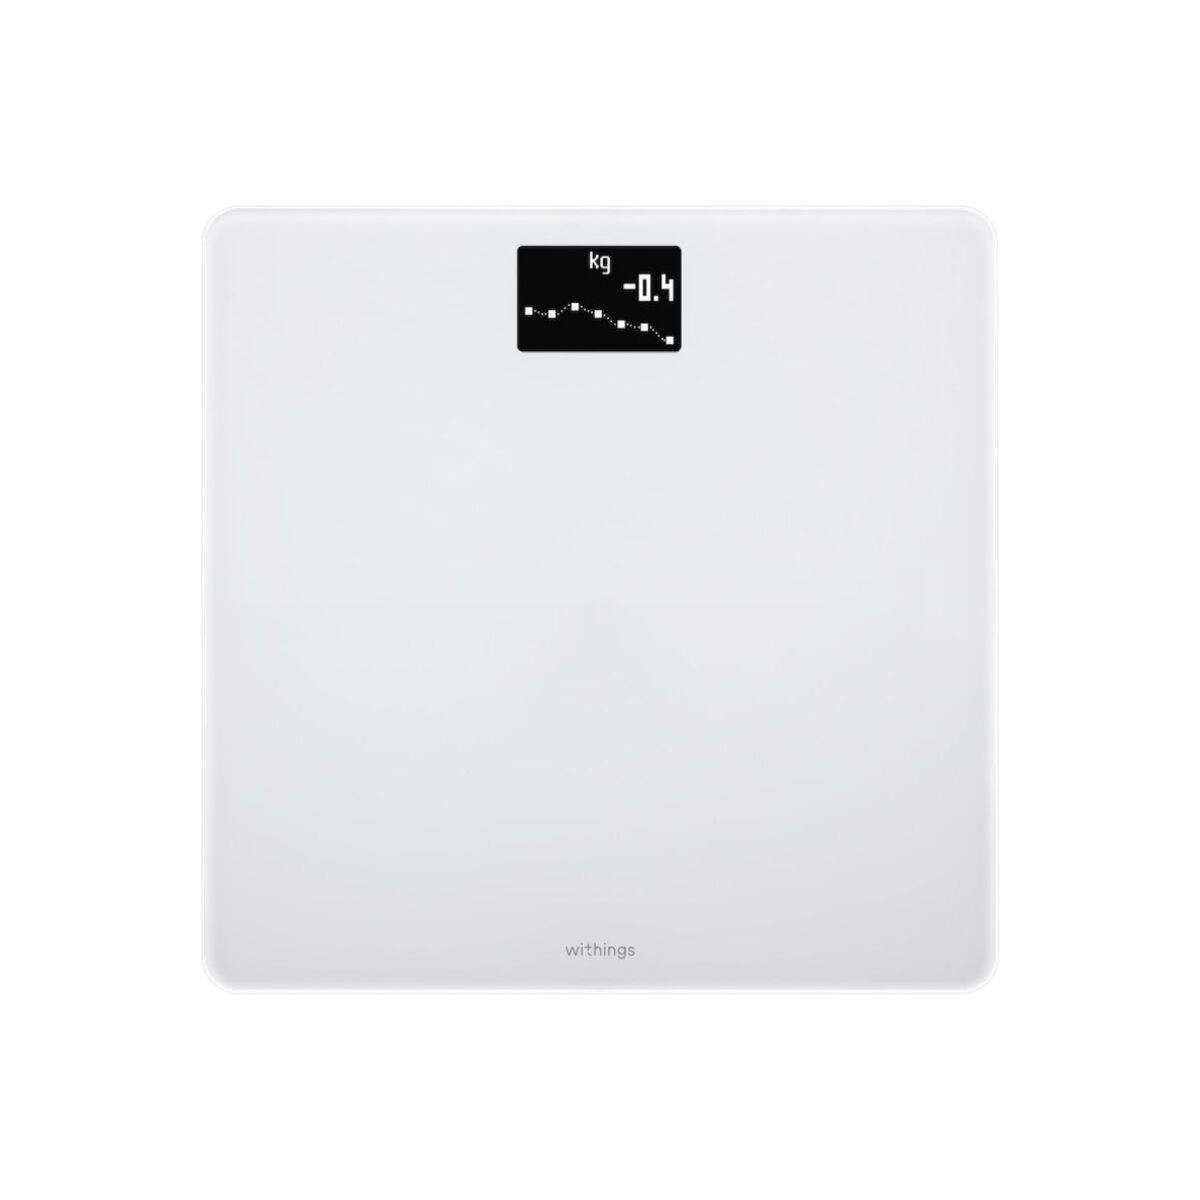 Nokia Body BMI Wi-fi scale WBS06-White-All-Inter